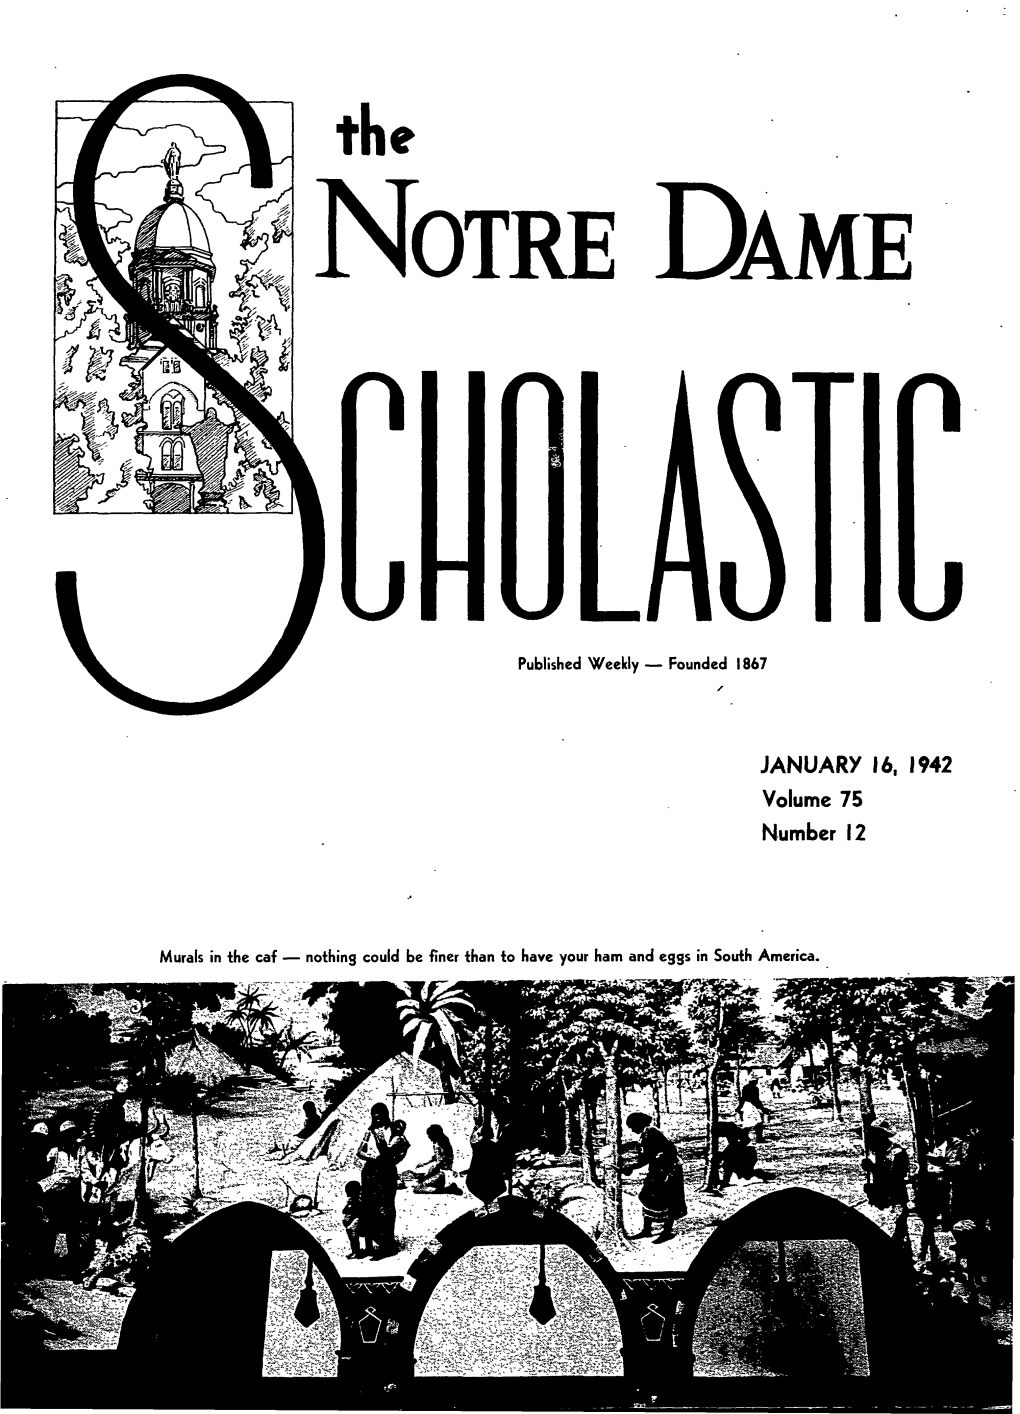 Notre Dame Scholastic, Vol. 75, No. 12